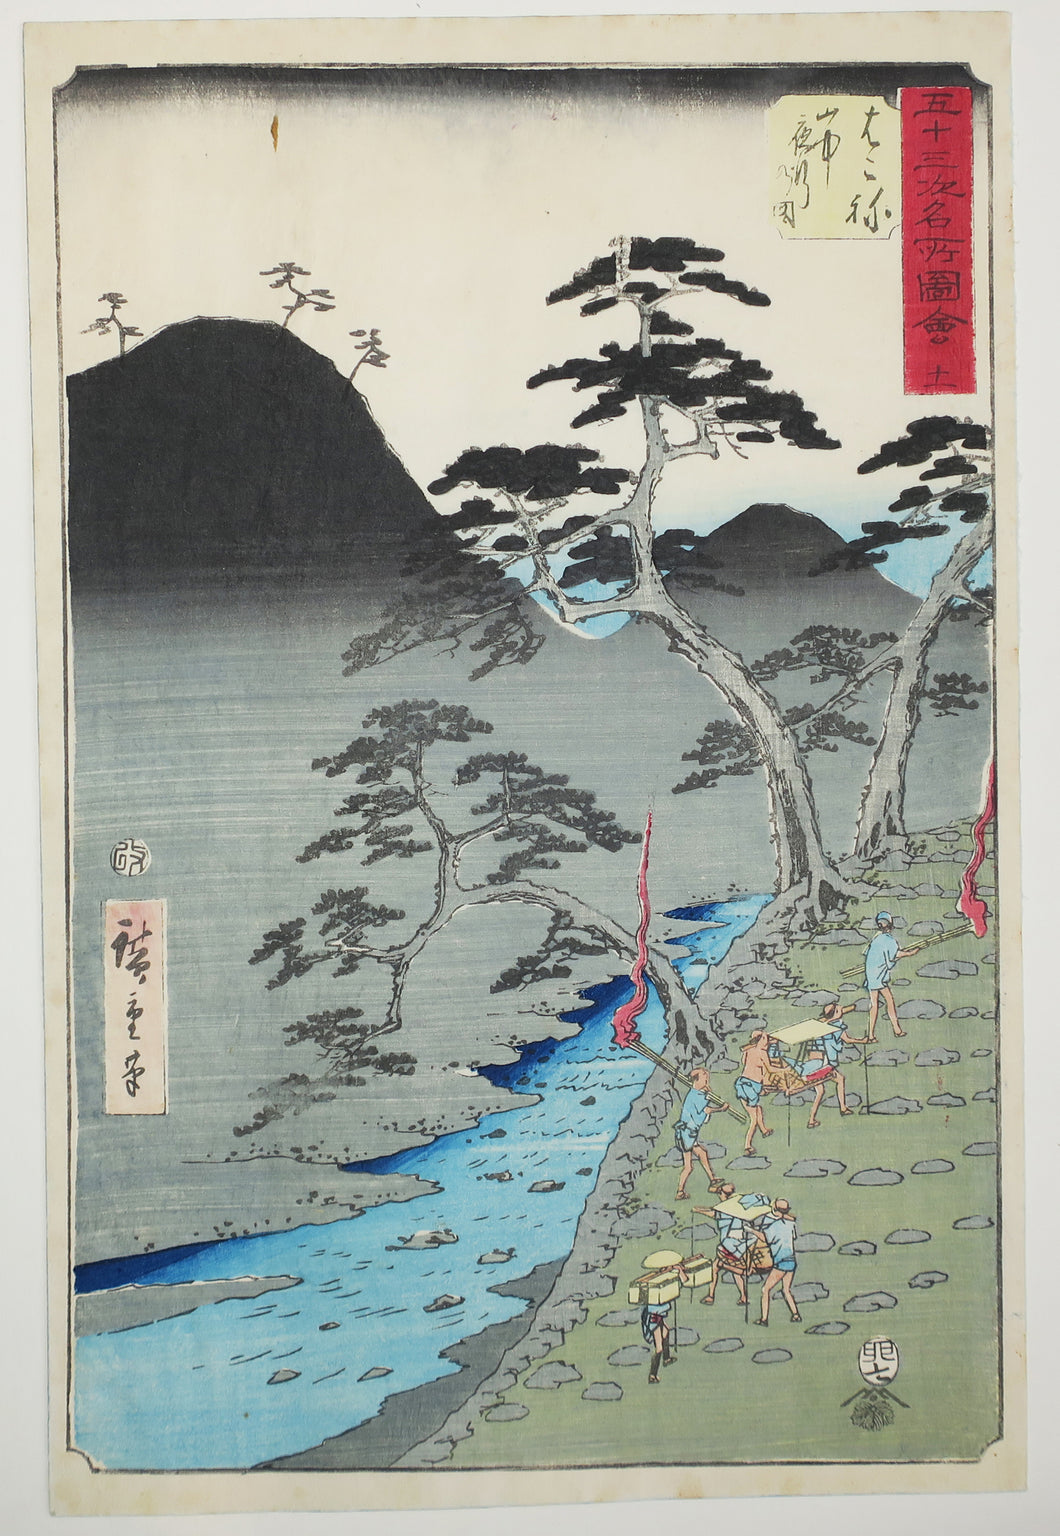 Hakone: Procession nocturne dans les montagnes (Hakone, sanchū yagyō no zu). 1855.